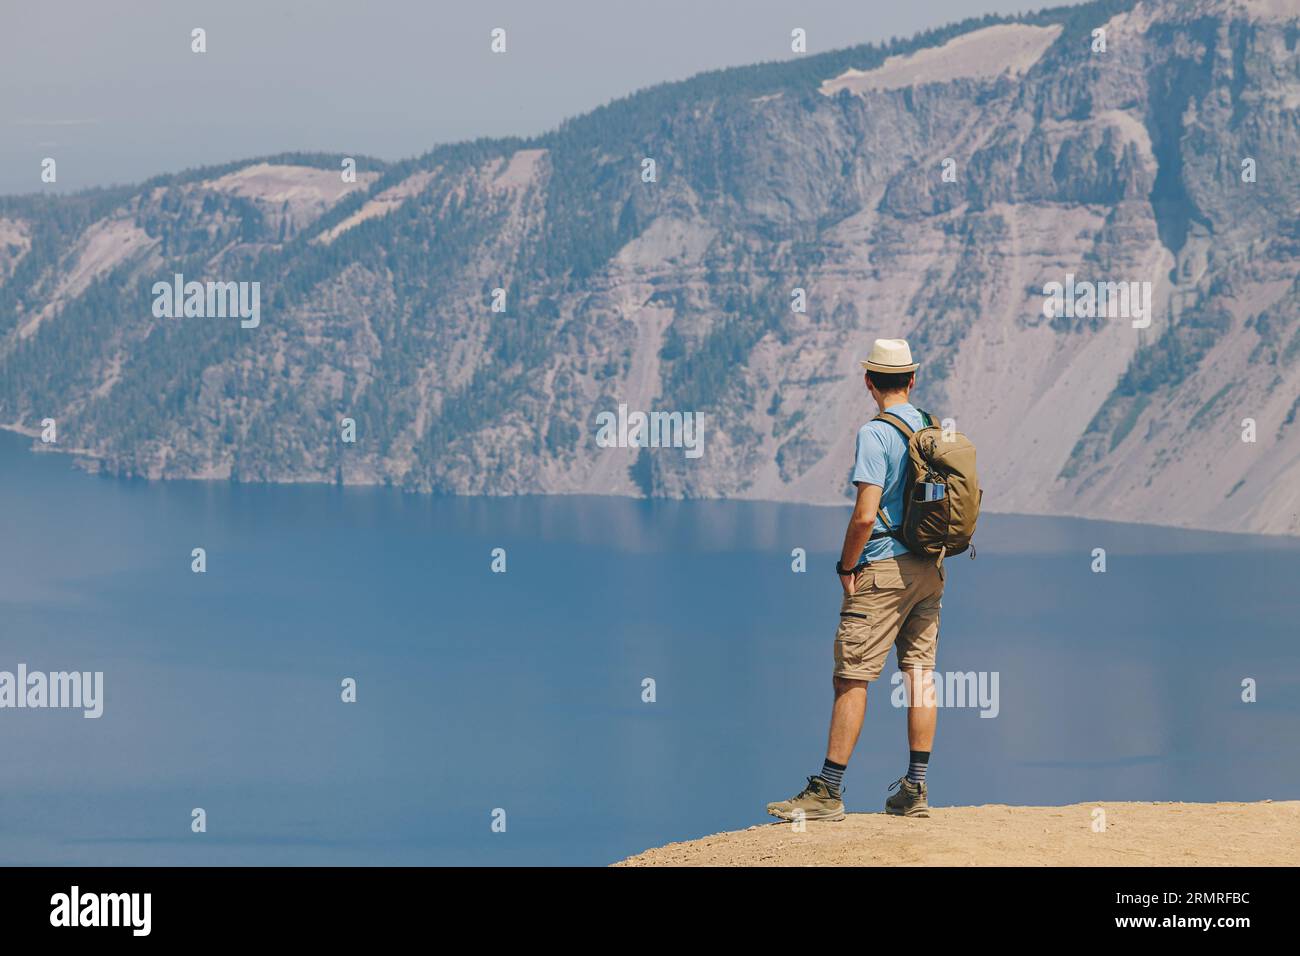 Randonnée estivale dans un parc national du lac Crater, homme avec un sac à dos debout avec vue sur la caldeira Banque D'Images